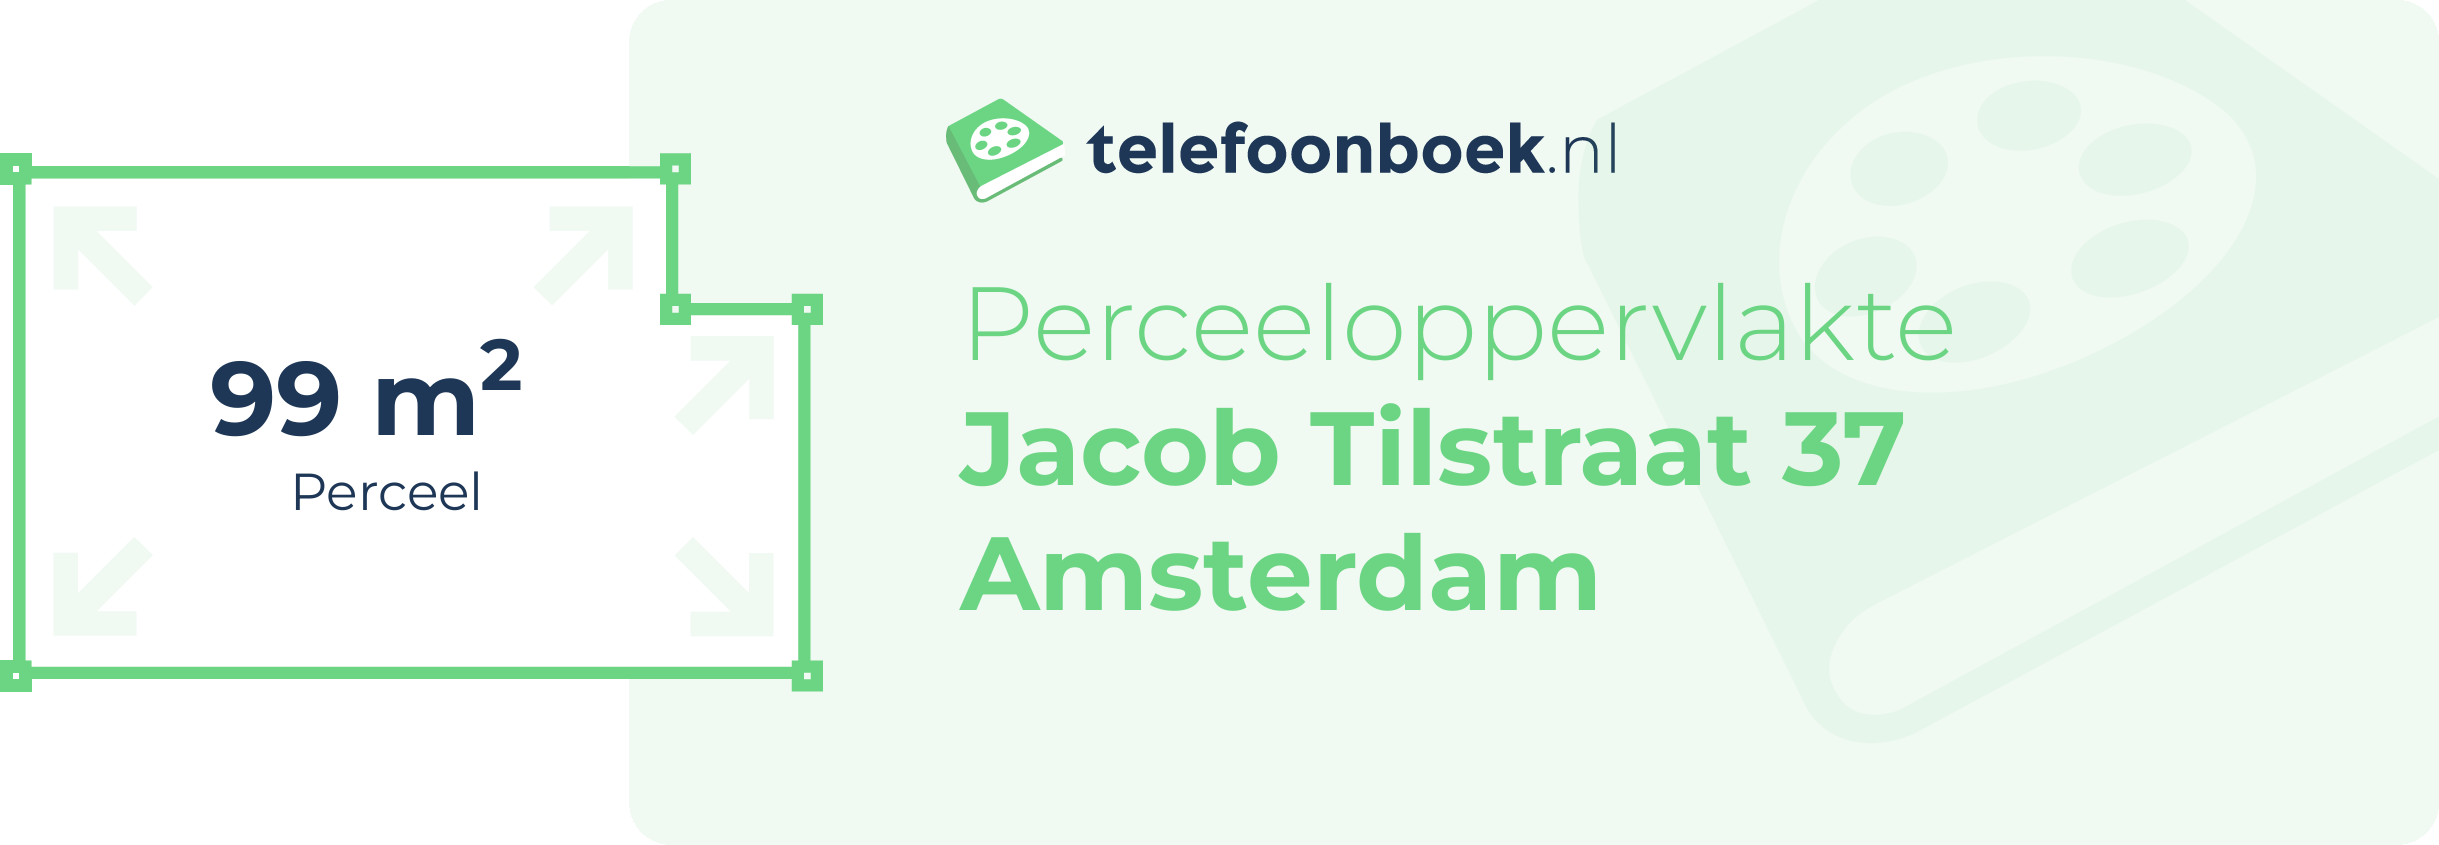 Perceeloppervlakte Jacob Tilstraat 37 Amsterdam